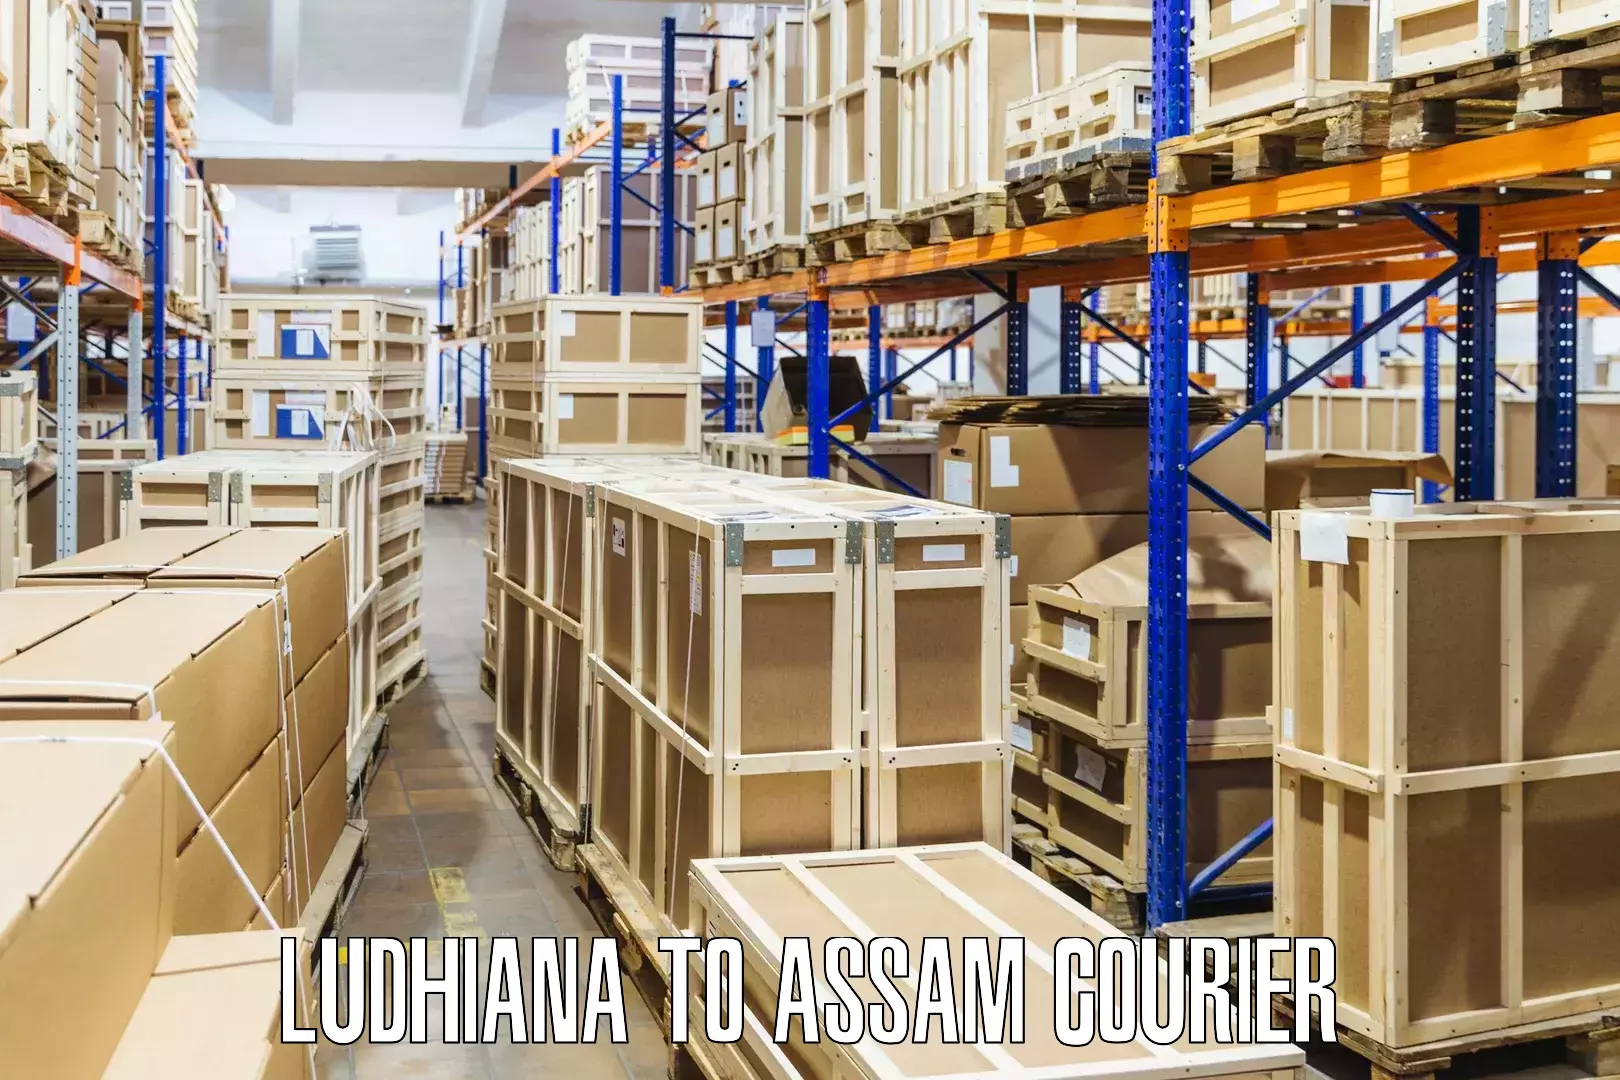 Courier service comparison Ludhiana to Agomani